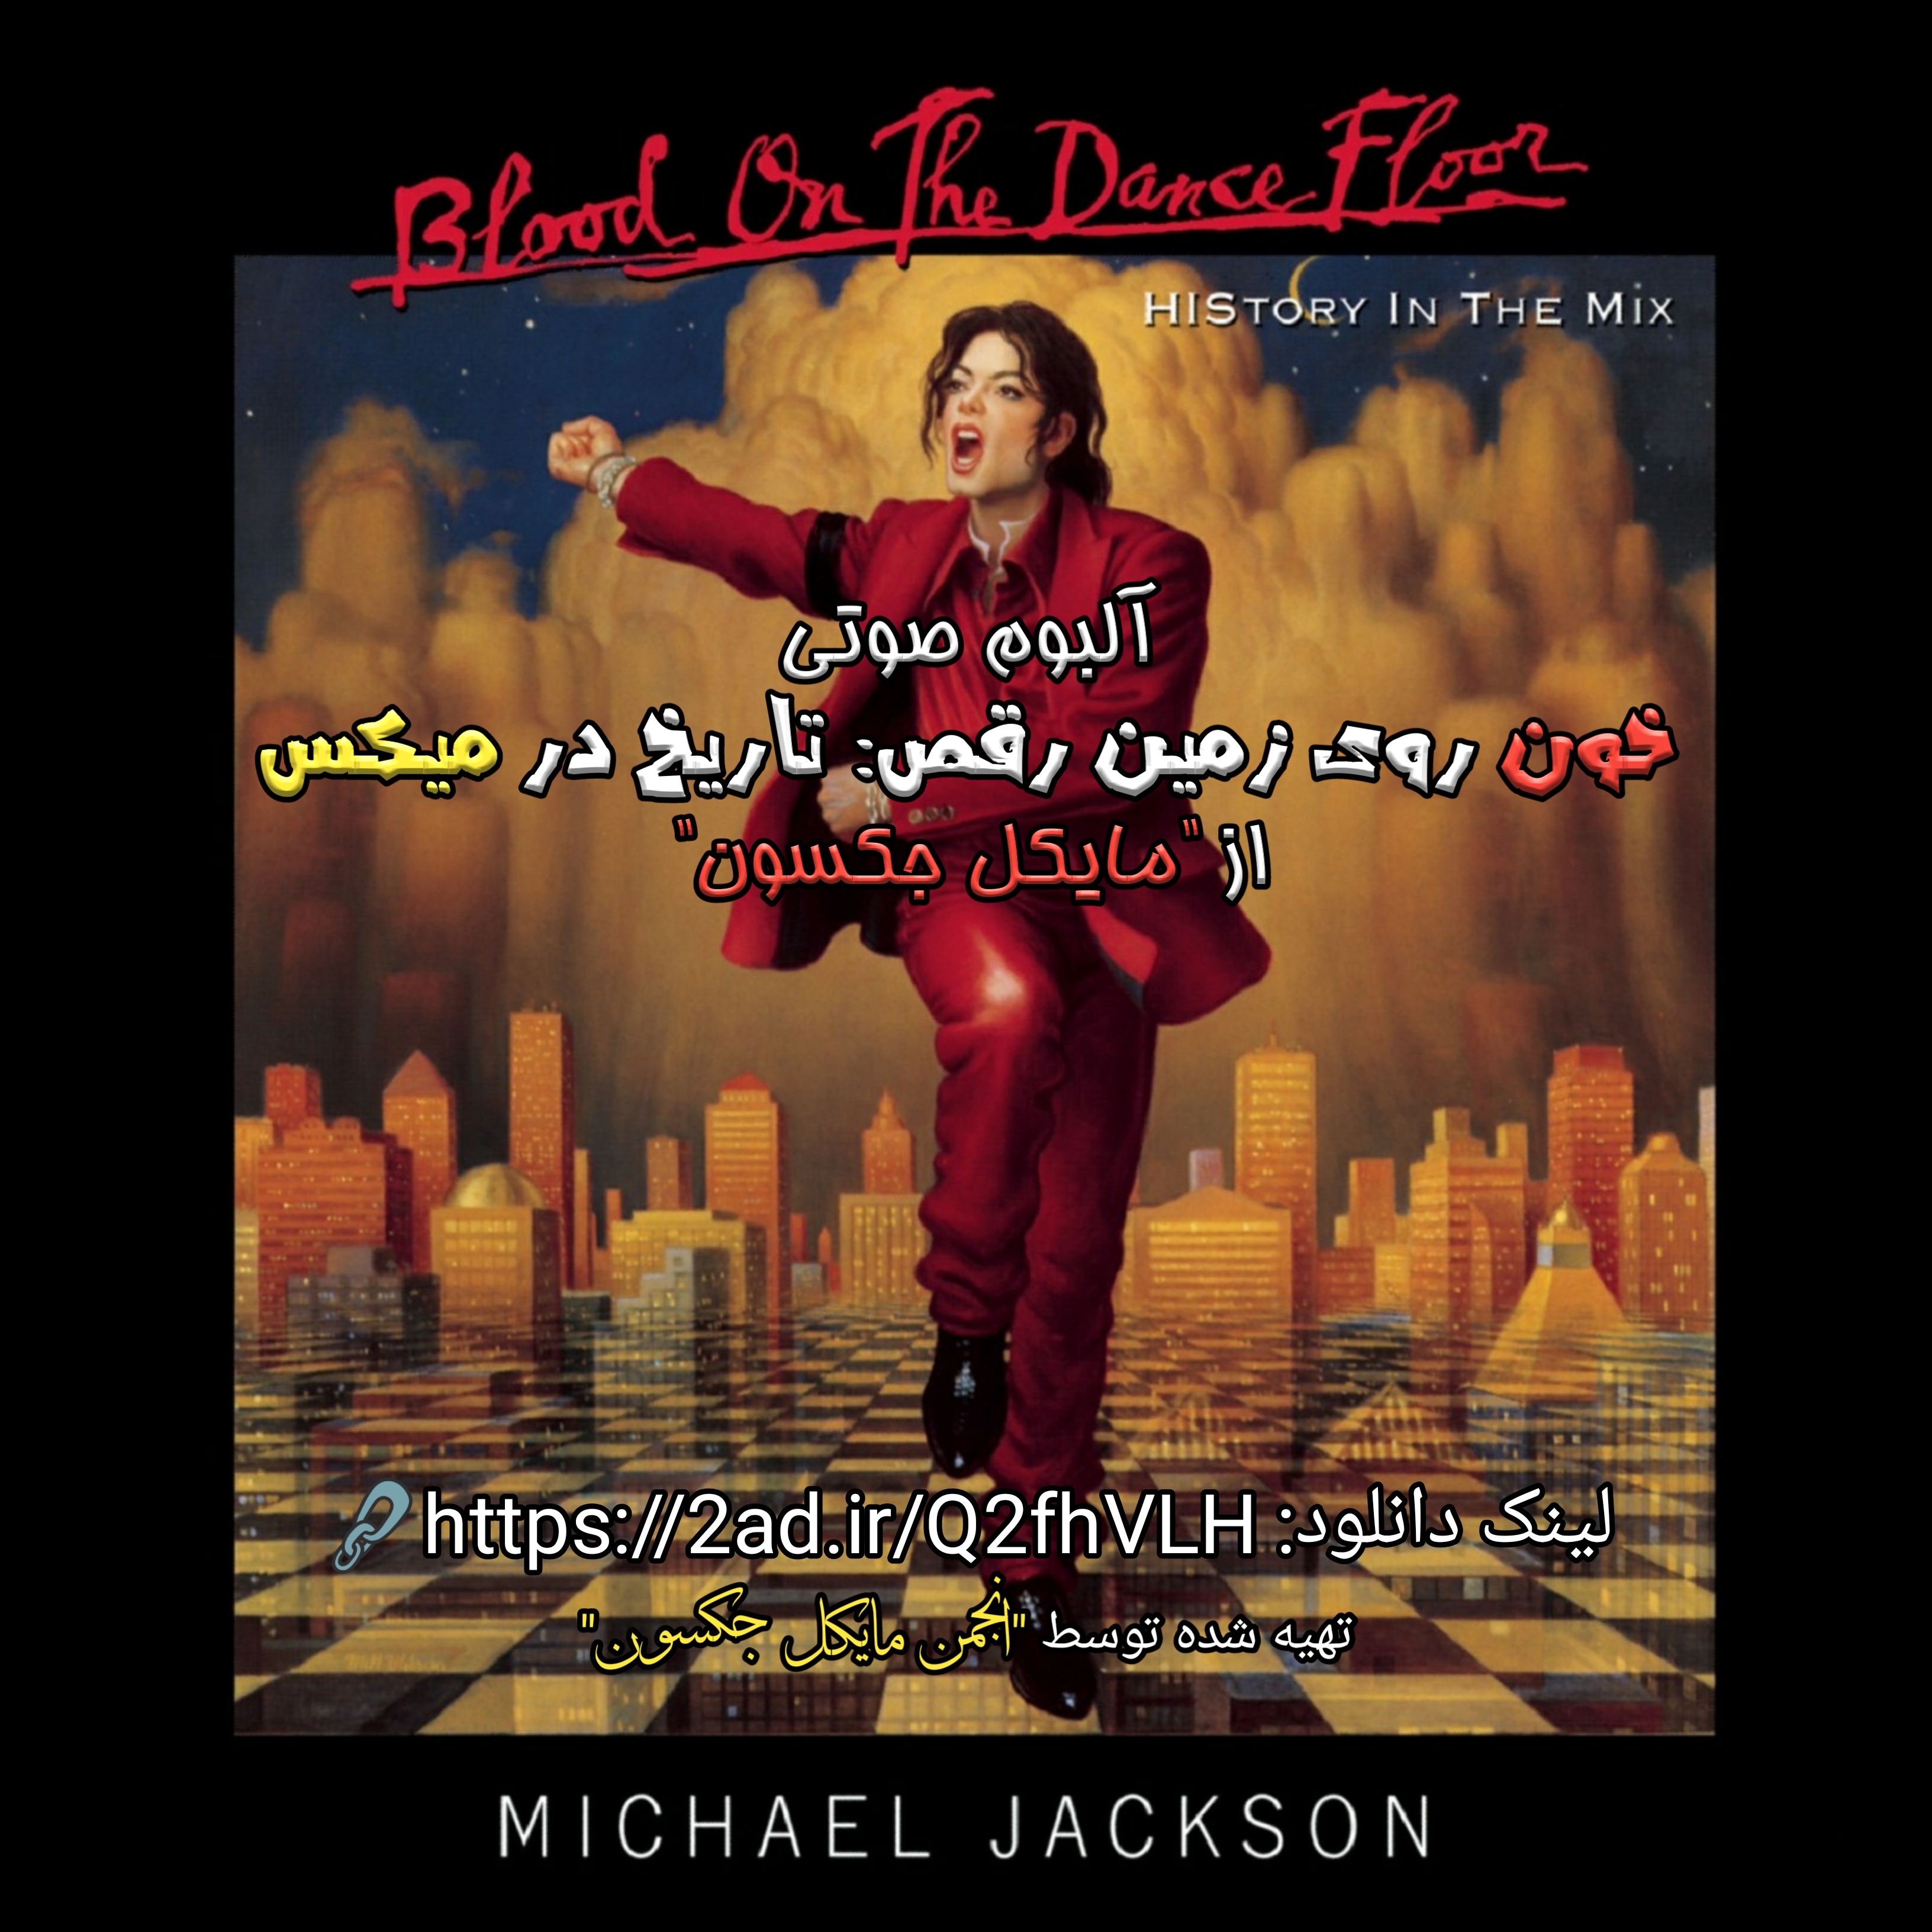 آلبوم خون روی زمین رقص: تاریخ در میکس از مایکل جکسون